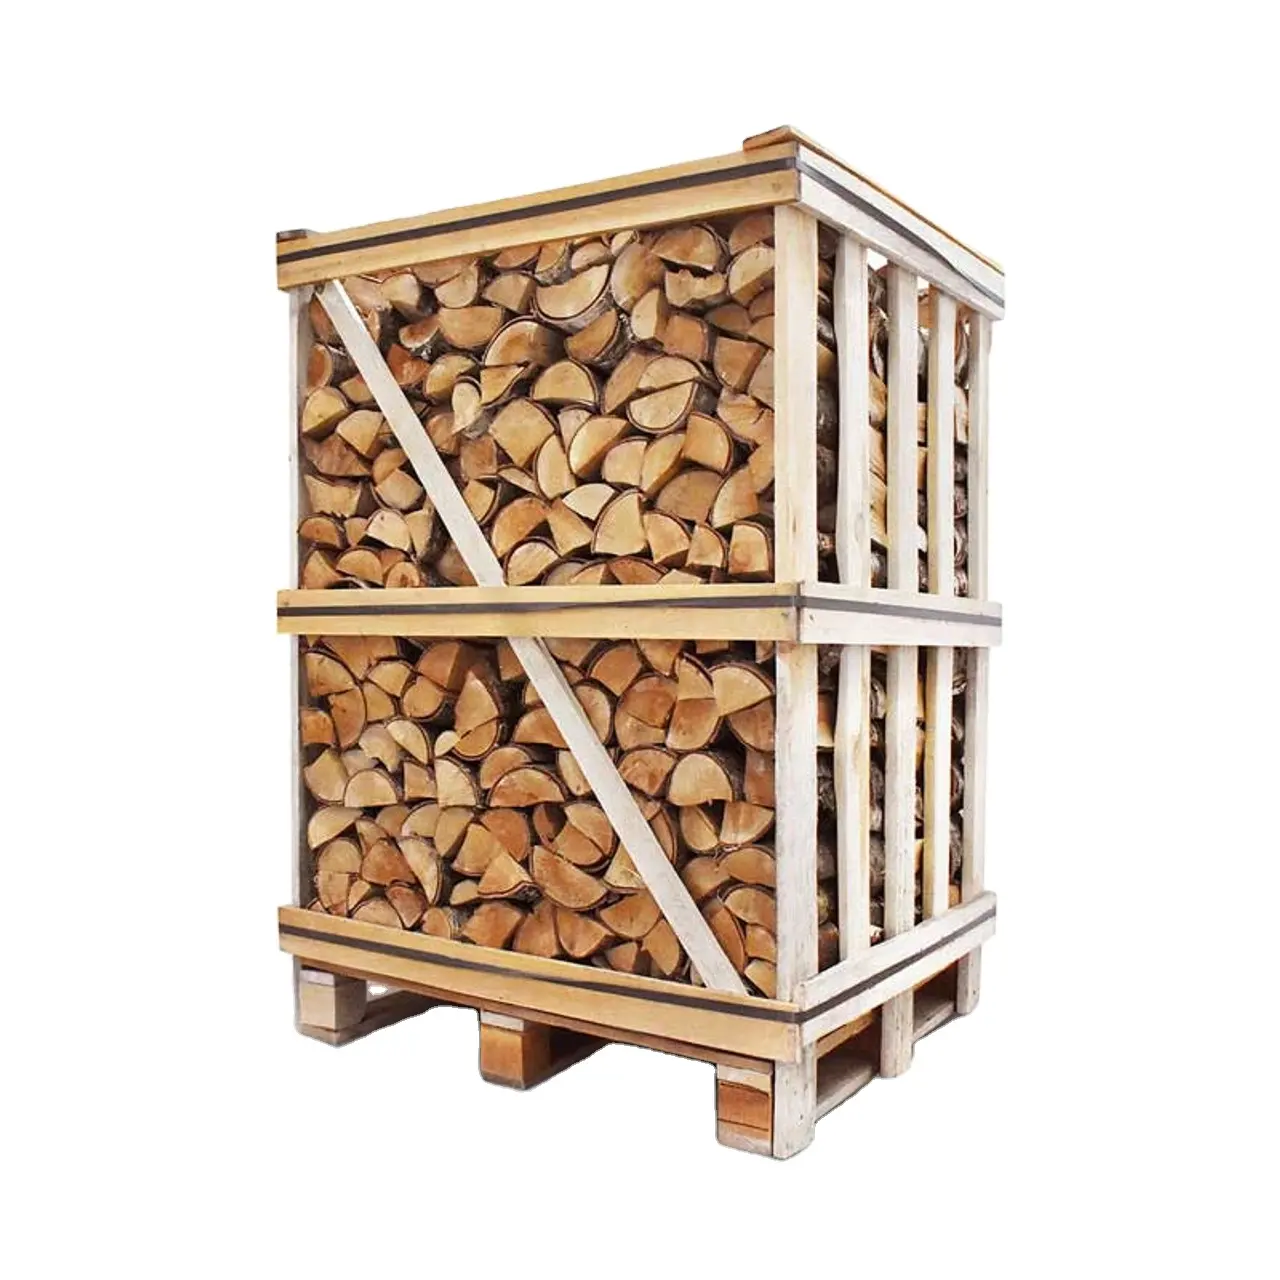 Kayu bakar ek Beech pada palet/kayu bakar kering dengan harga murah + fungsi + spesifikasi